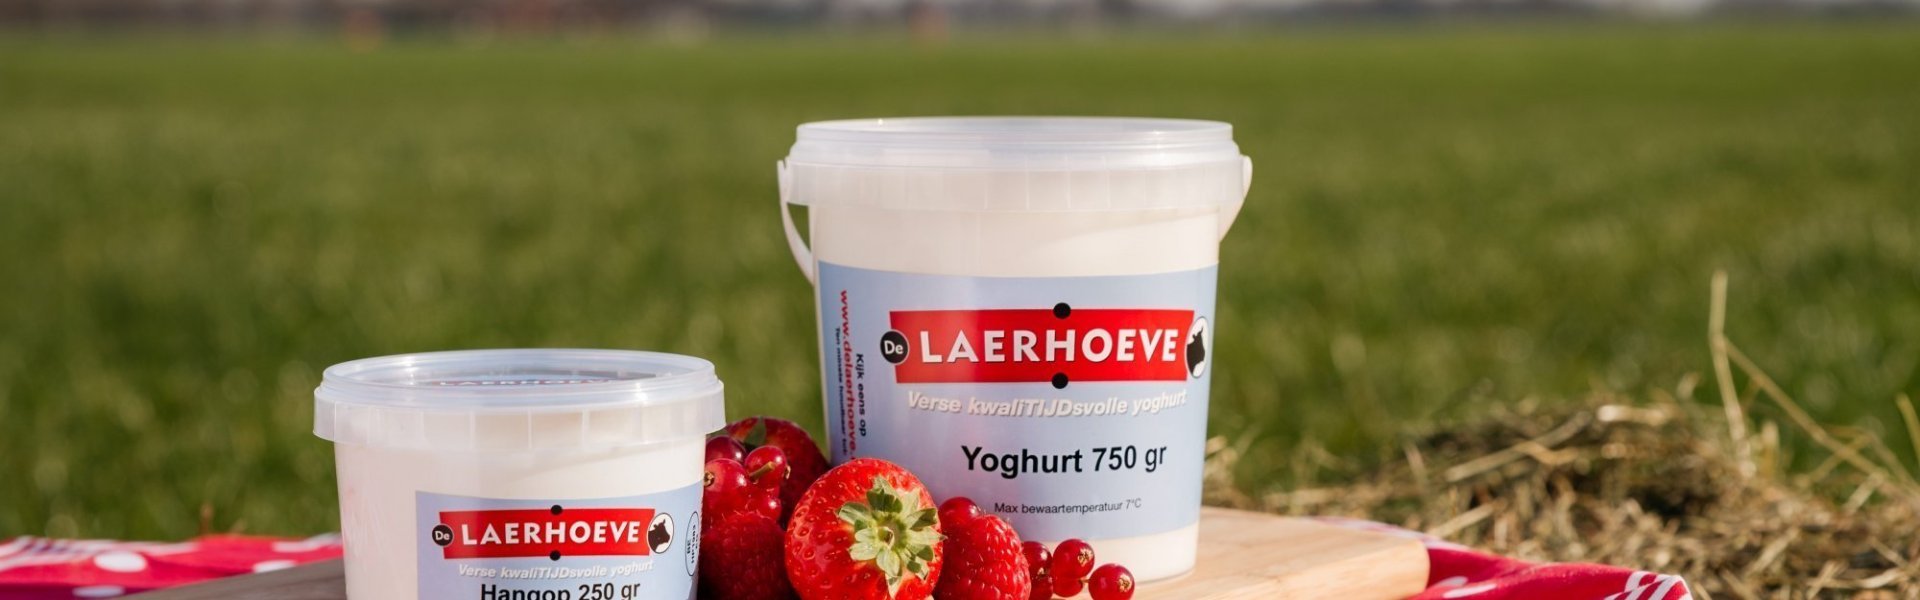 Yoghurt van De Laerhoeve